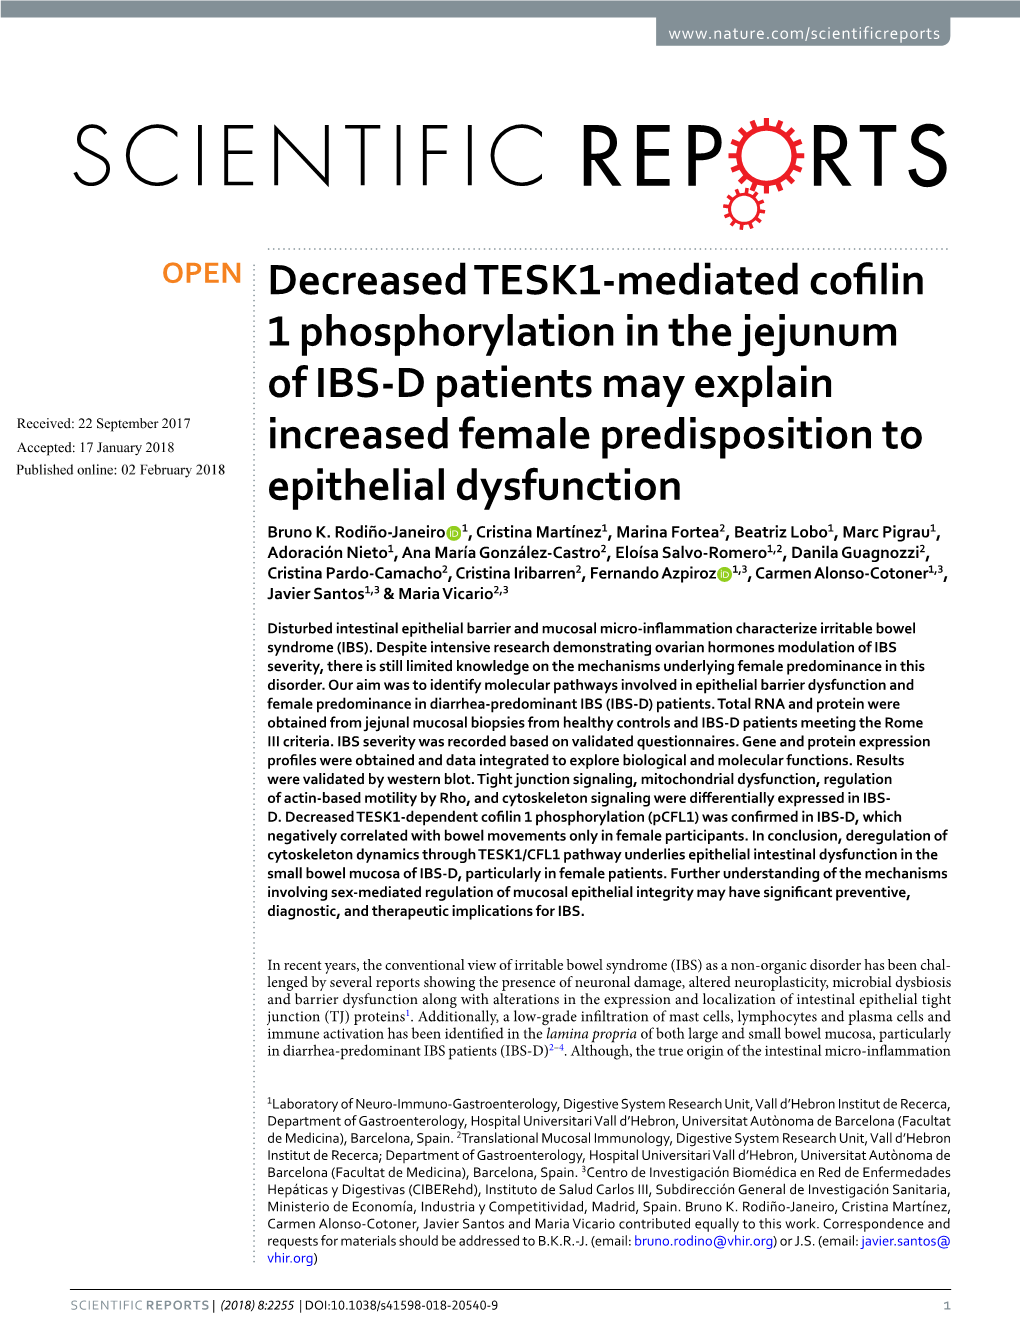 Decreased TESK1-Mediated Cofilin 1 Phosphorylation in the Jejunum of IBS-D Patients May Explain Increased Female Predisposition